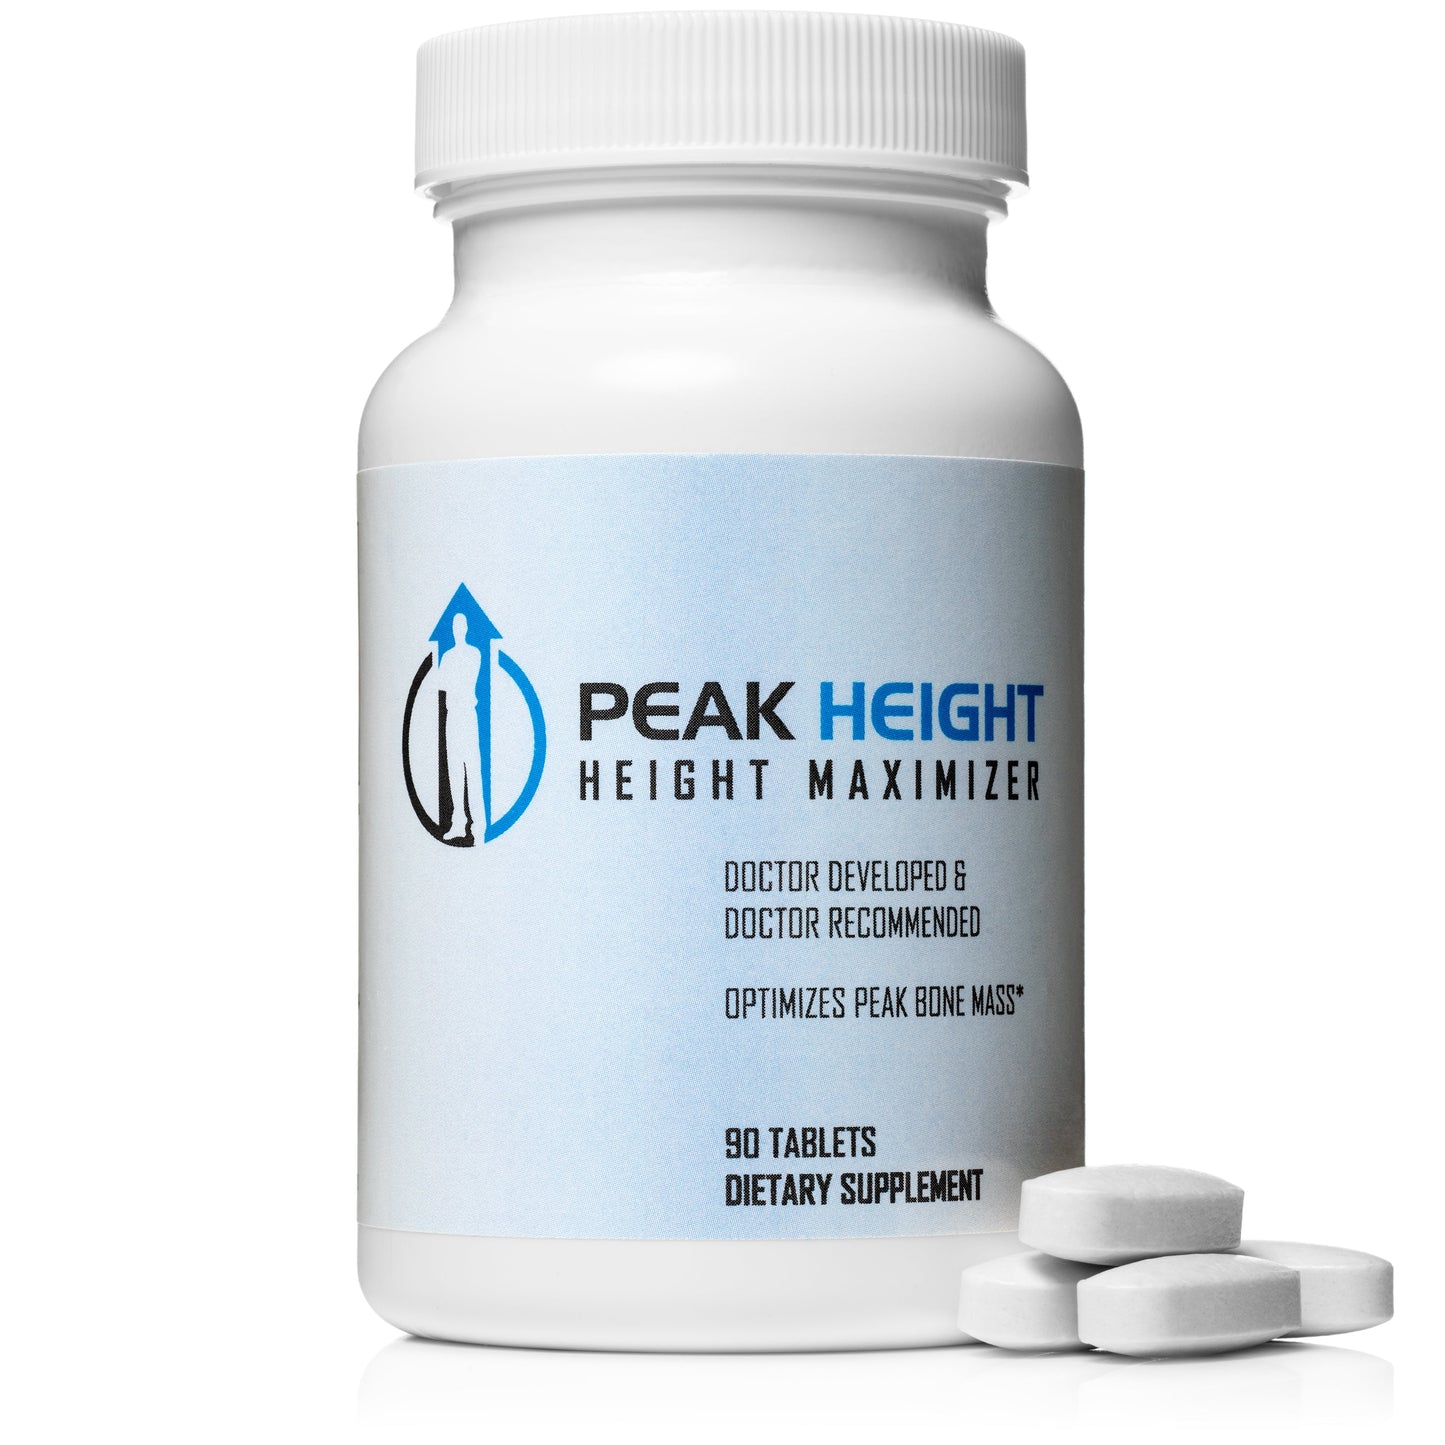 Peak Height Growth Supplement #1 Grow Taller Height Pill